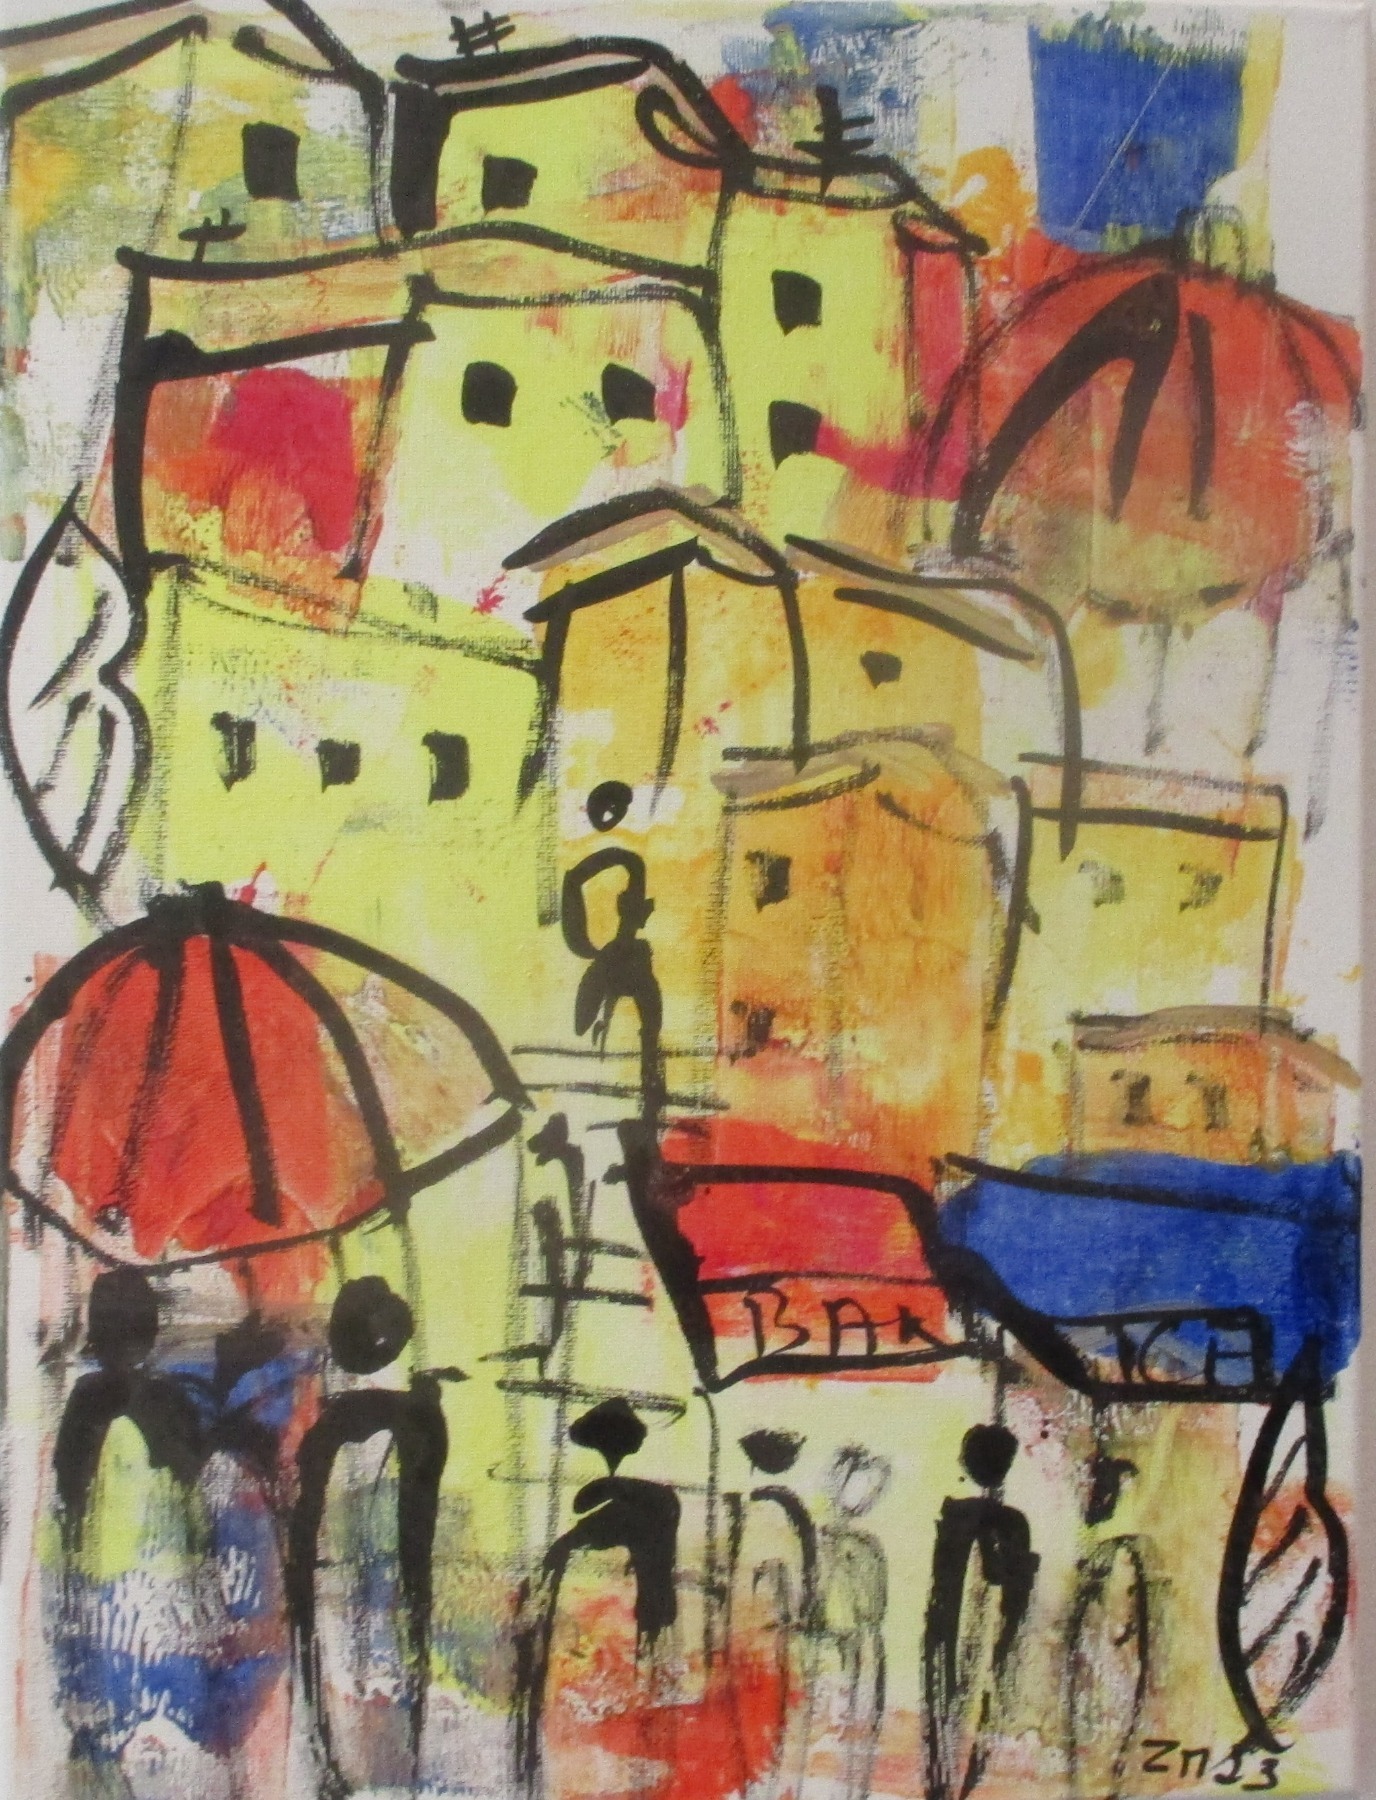 die Farben Italiens mit Kuppel expressive Häuser mit Menschen, expressive Malerei 40x30